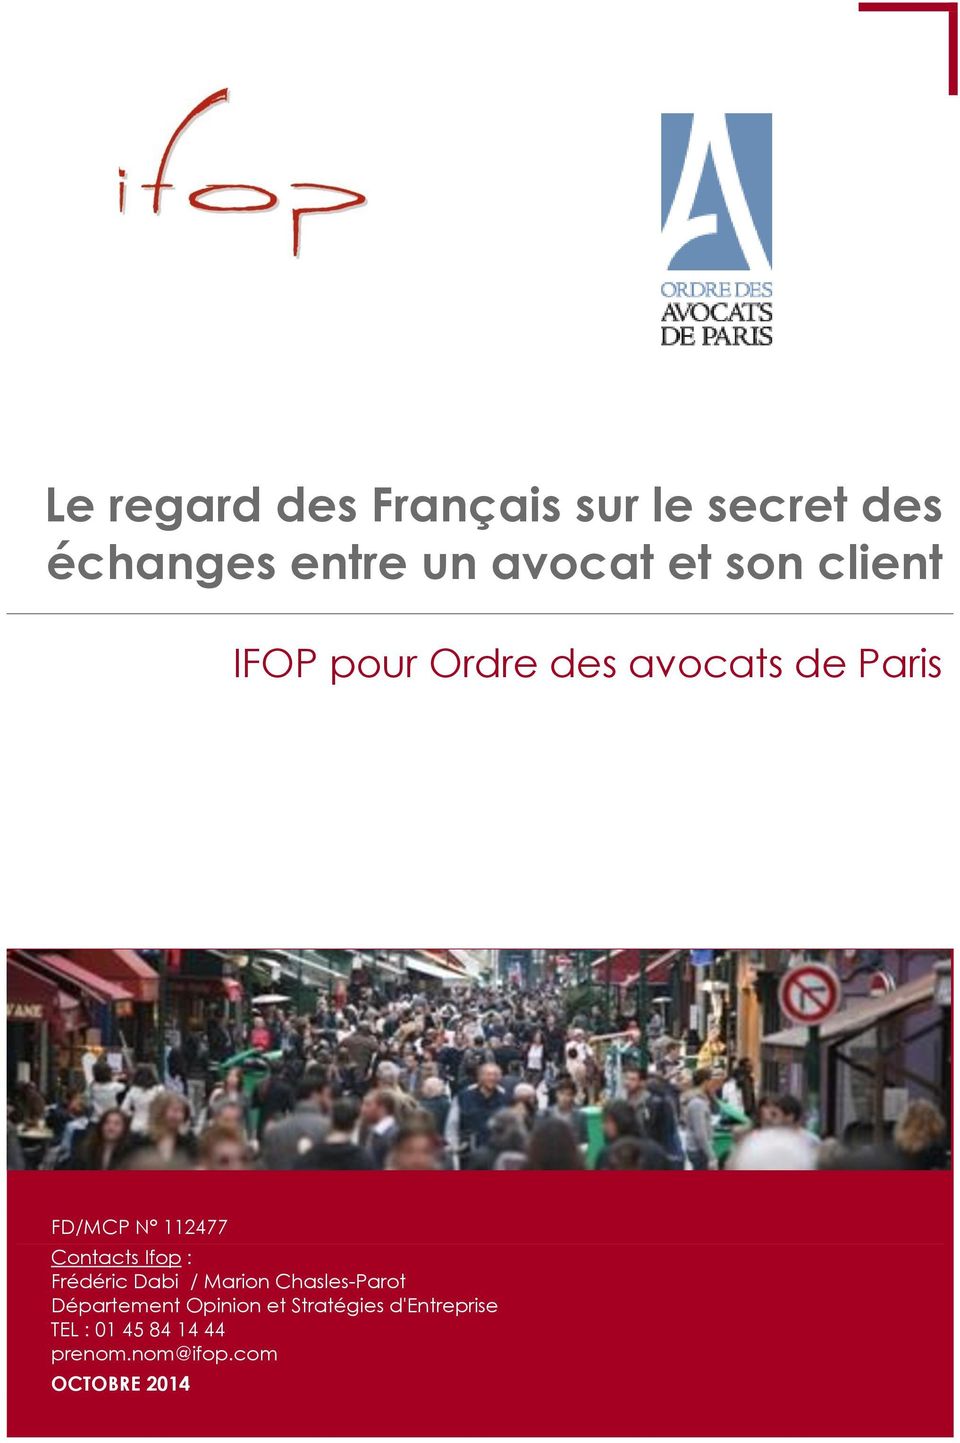 Contacts Ifop : Frédéric Dabi / Marion Chasles-Parot Département